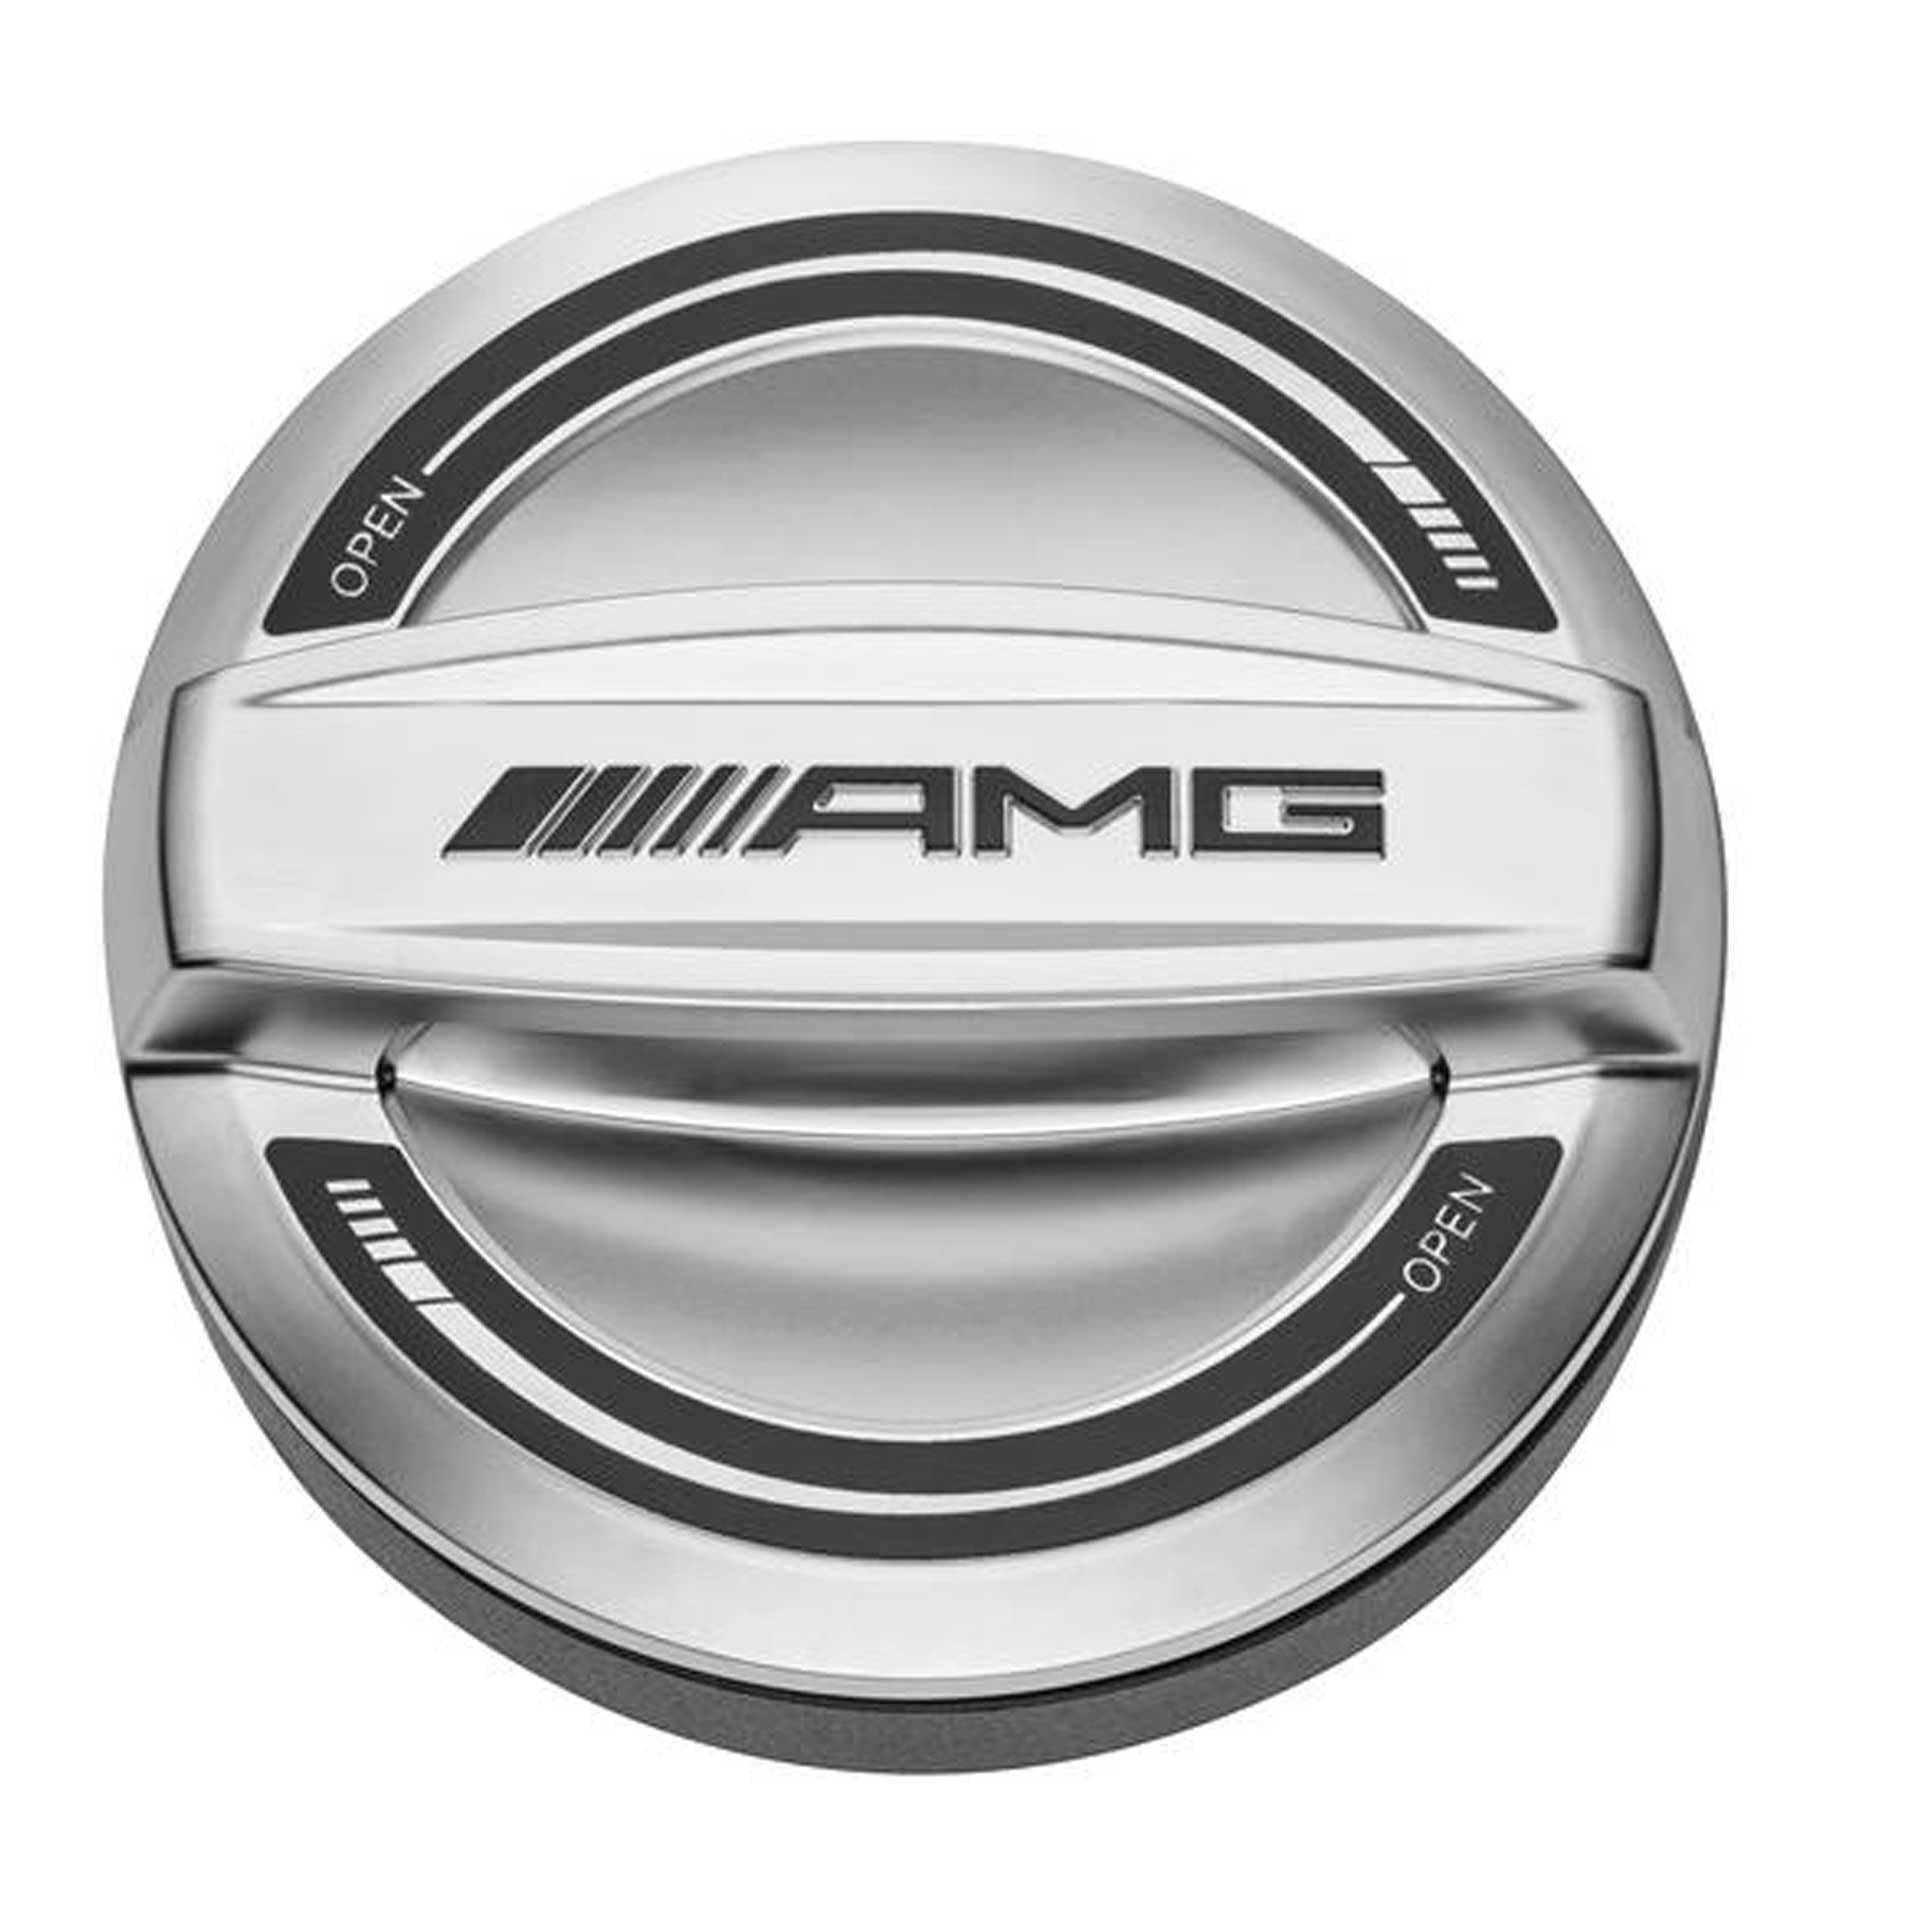 Mercedes-Benz AMG Original Tankdeckel Chromshadow Oberfläche Matt für alle neueren Fahrzeug Diesel und Benziner Modellen von Mercedes-Benz